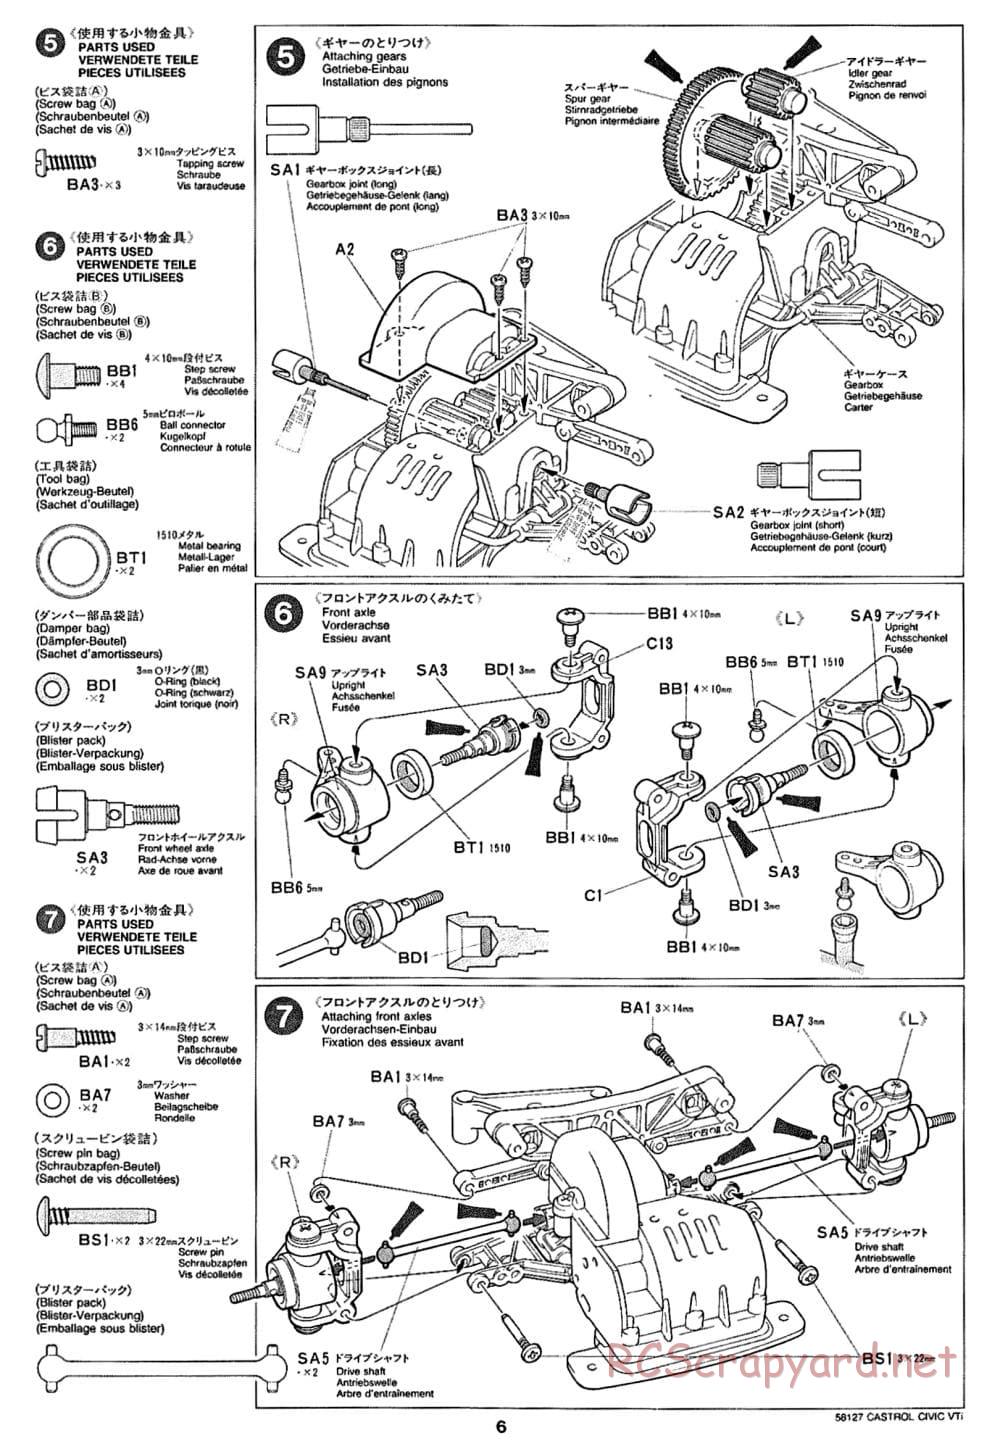 Tamiya - Castrol Honda Civic VTi - FF-01 Chassis - Manual - Page 6